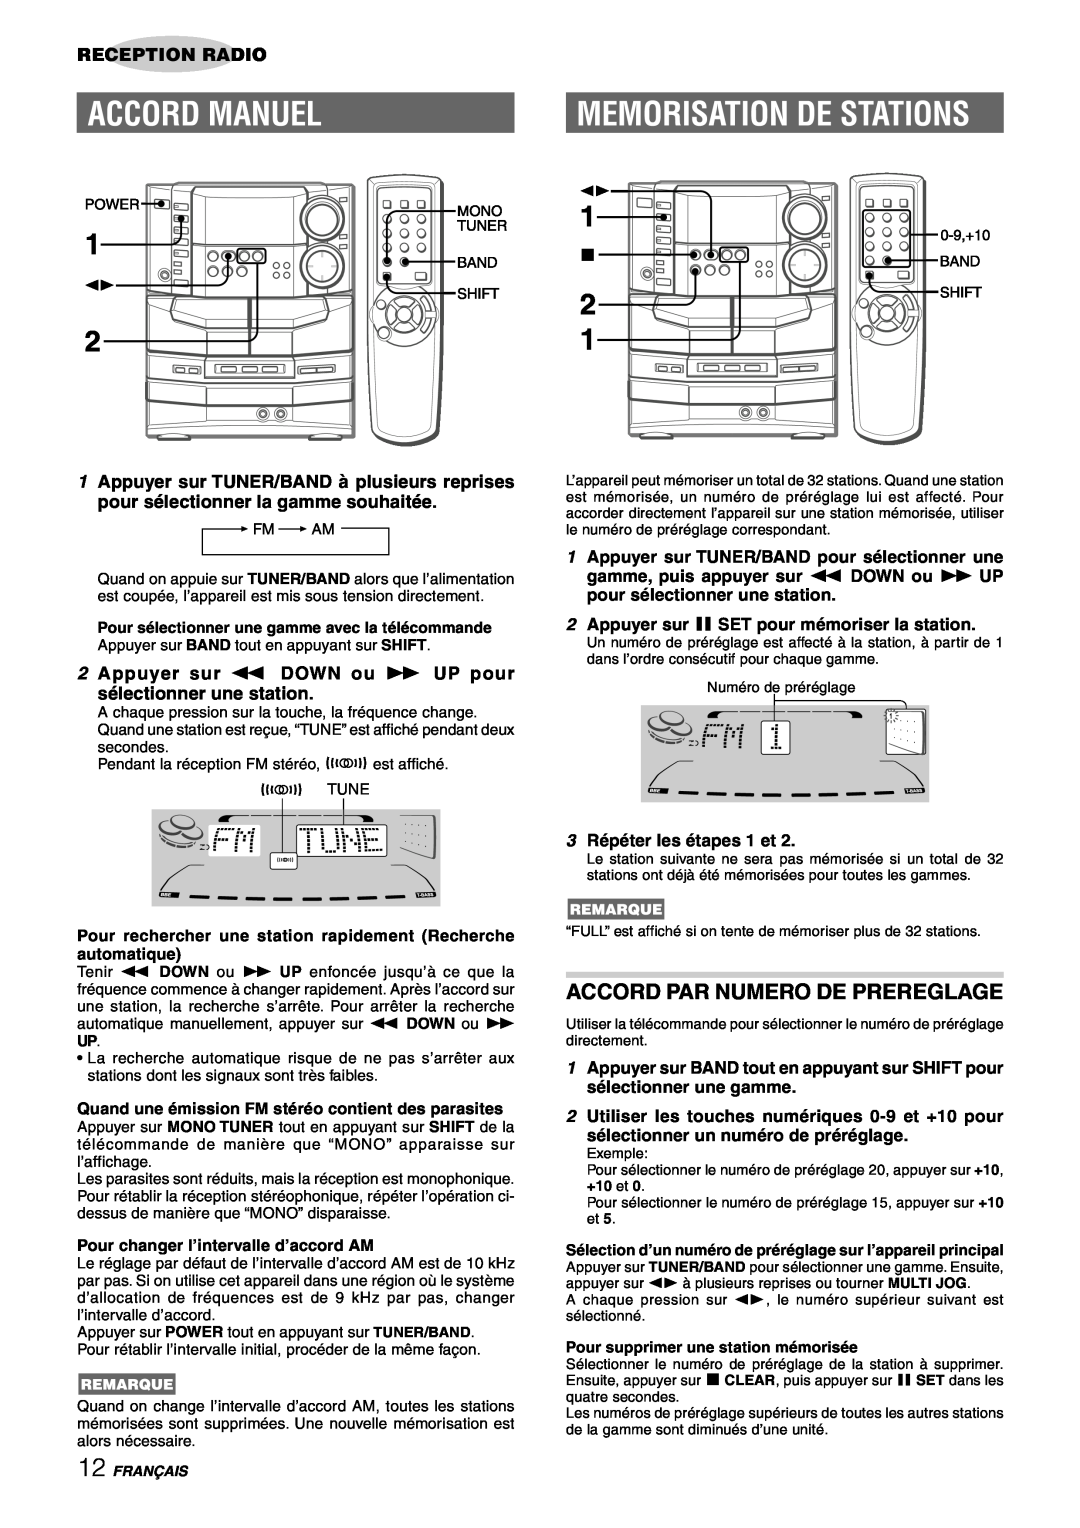 Sony NSX-AJ80 manual Accord Manuel, Memorisation De Stations, Accord Par Numero De Prereglage, Reception Radio 